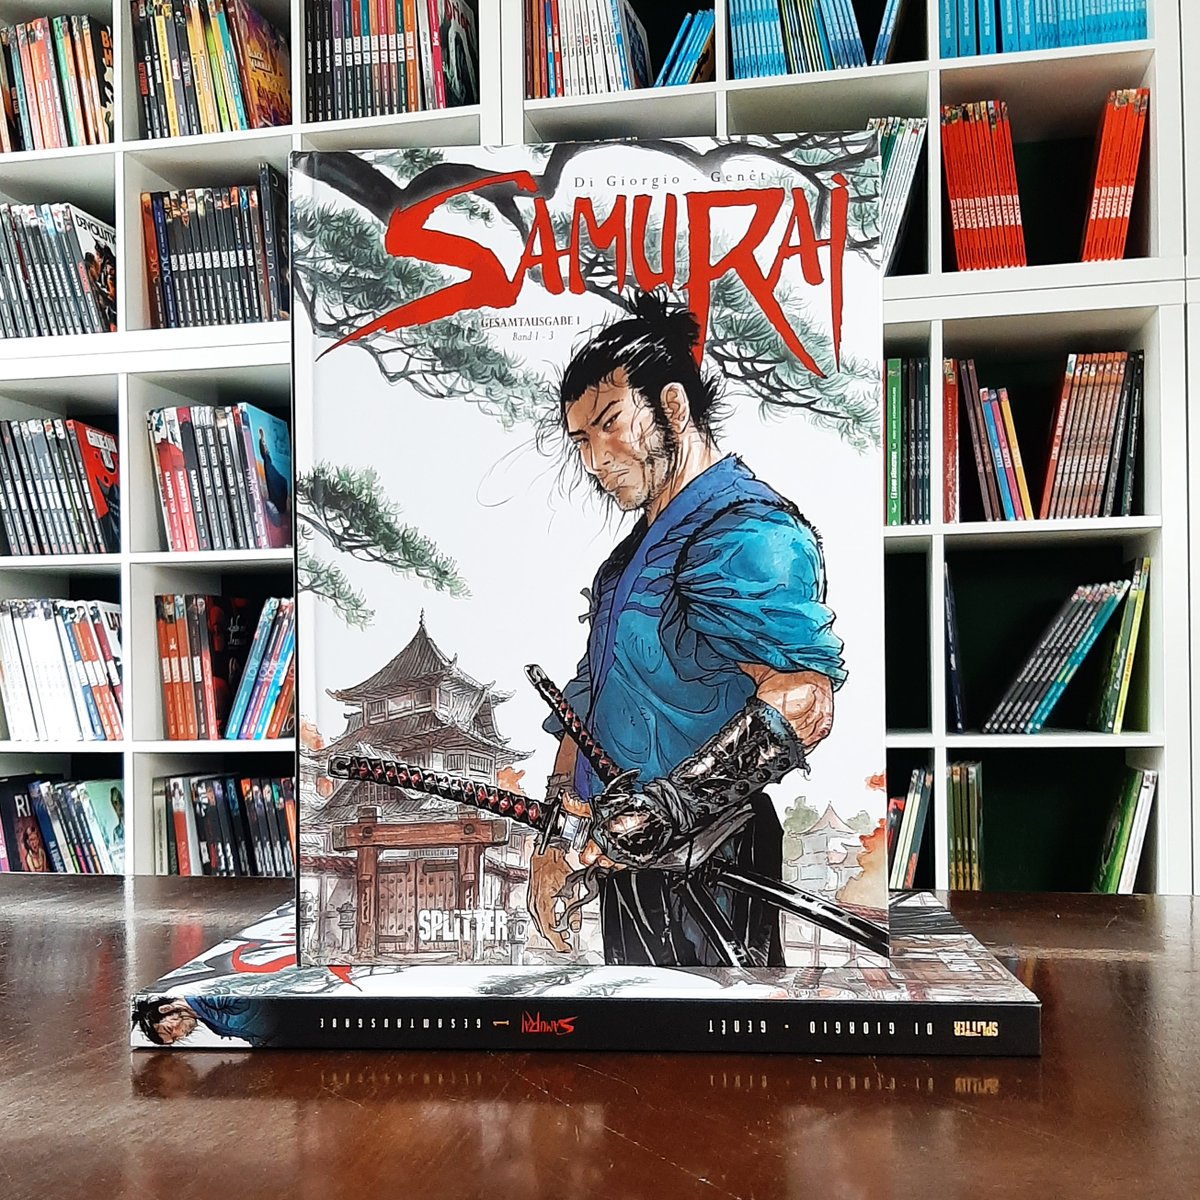 Viele von euch haben darauf gewartet, jetzt ist es soweit: Band 1 unserer SAMURAI GESAMTAUSGABE ist wieder verfügbar! SAMURAI ist ein moderner Klassiker des frankobelgischen Comics - da kann man wirklich unbesorgt zugreifen ;-) splitter-verlag.de/samurai-gesamt…